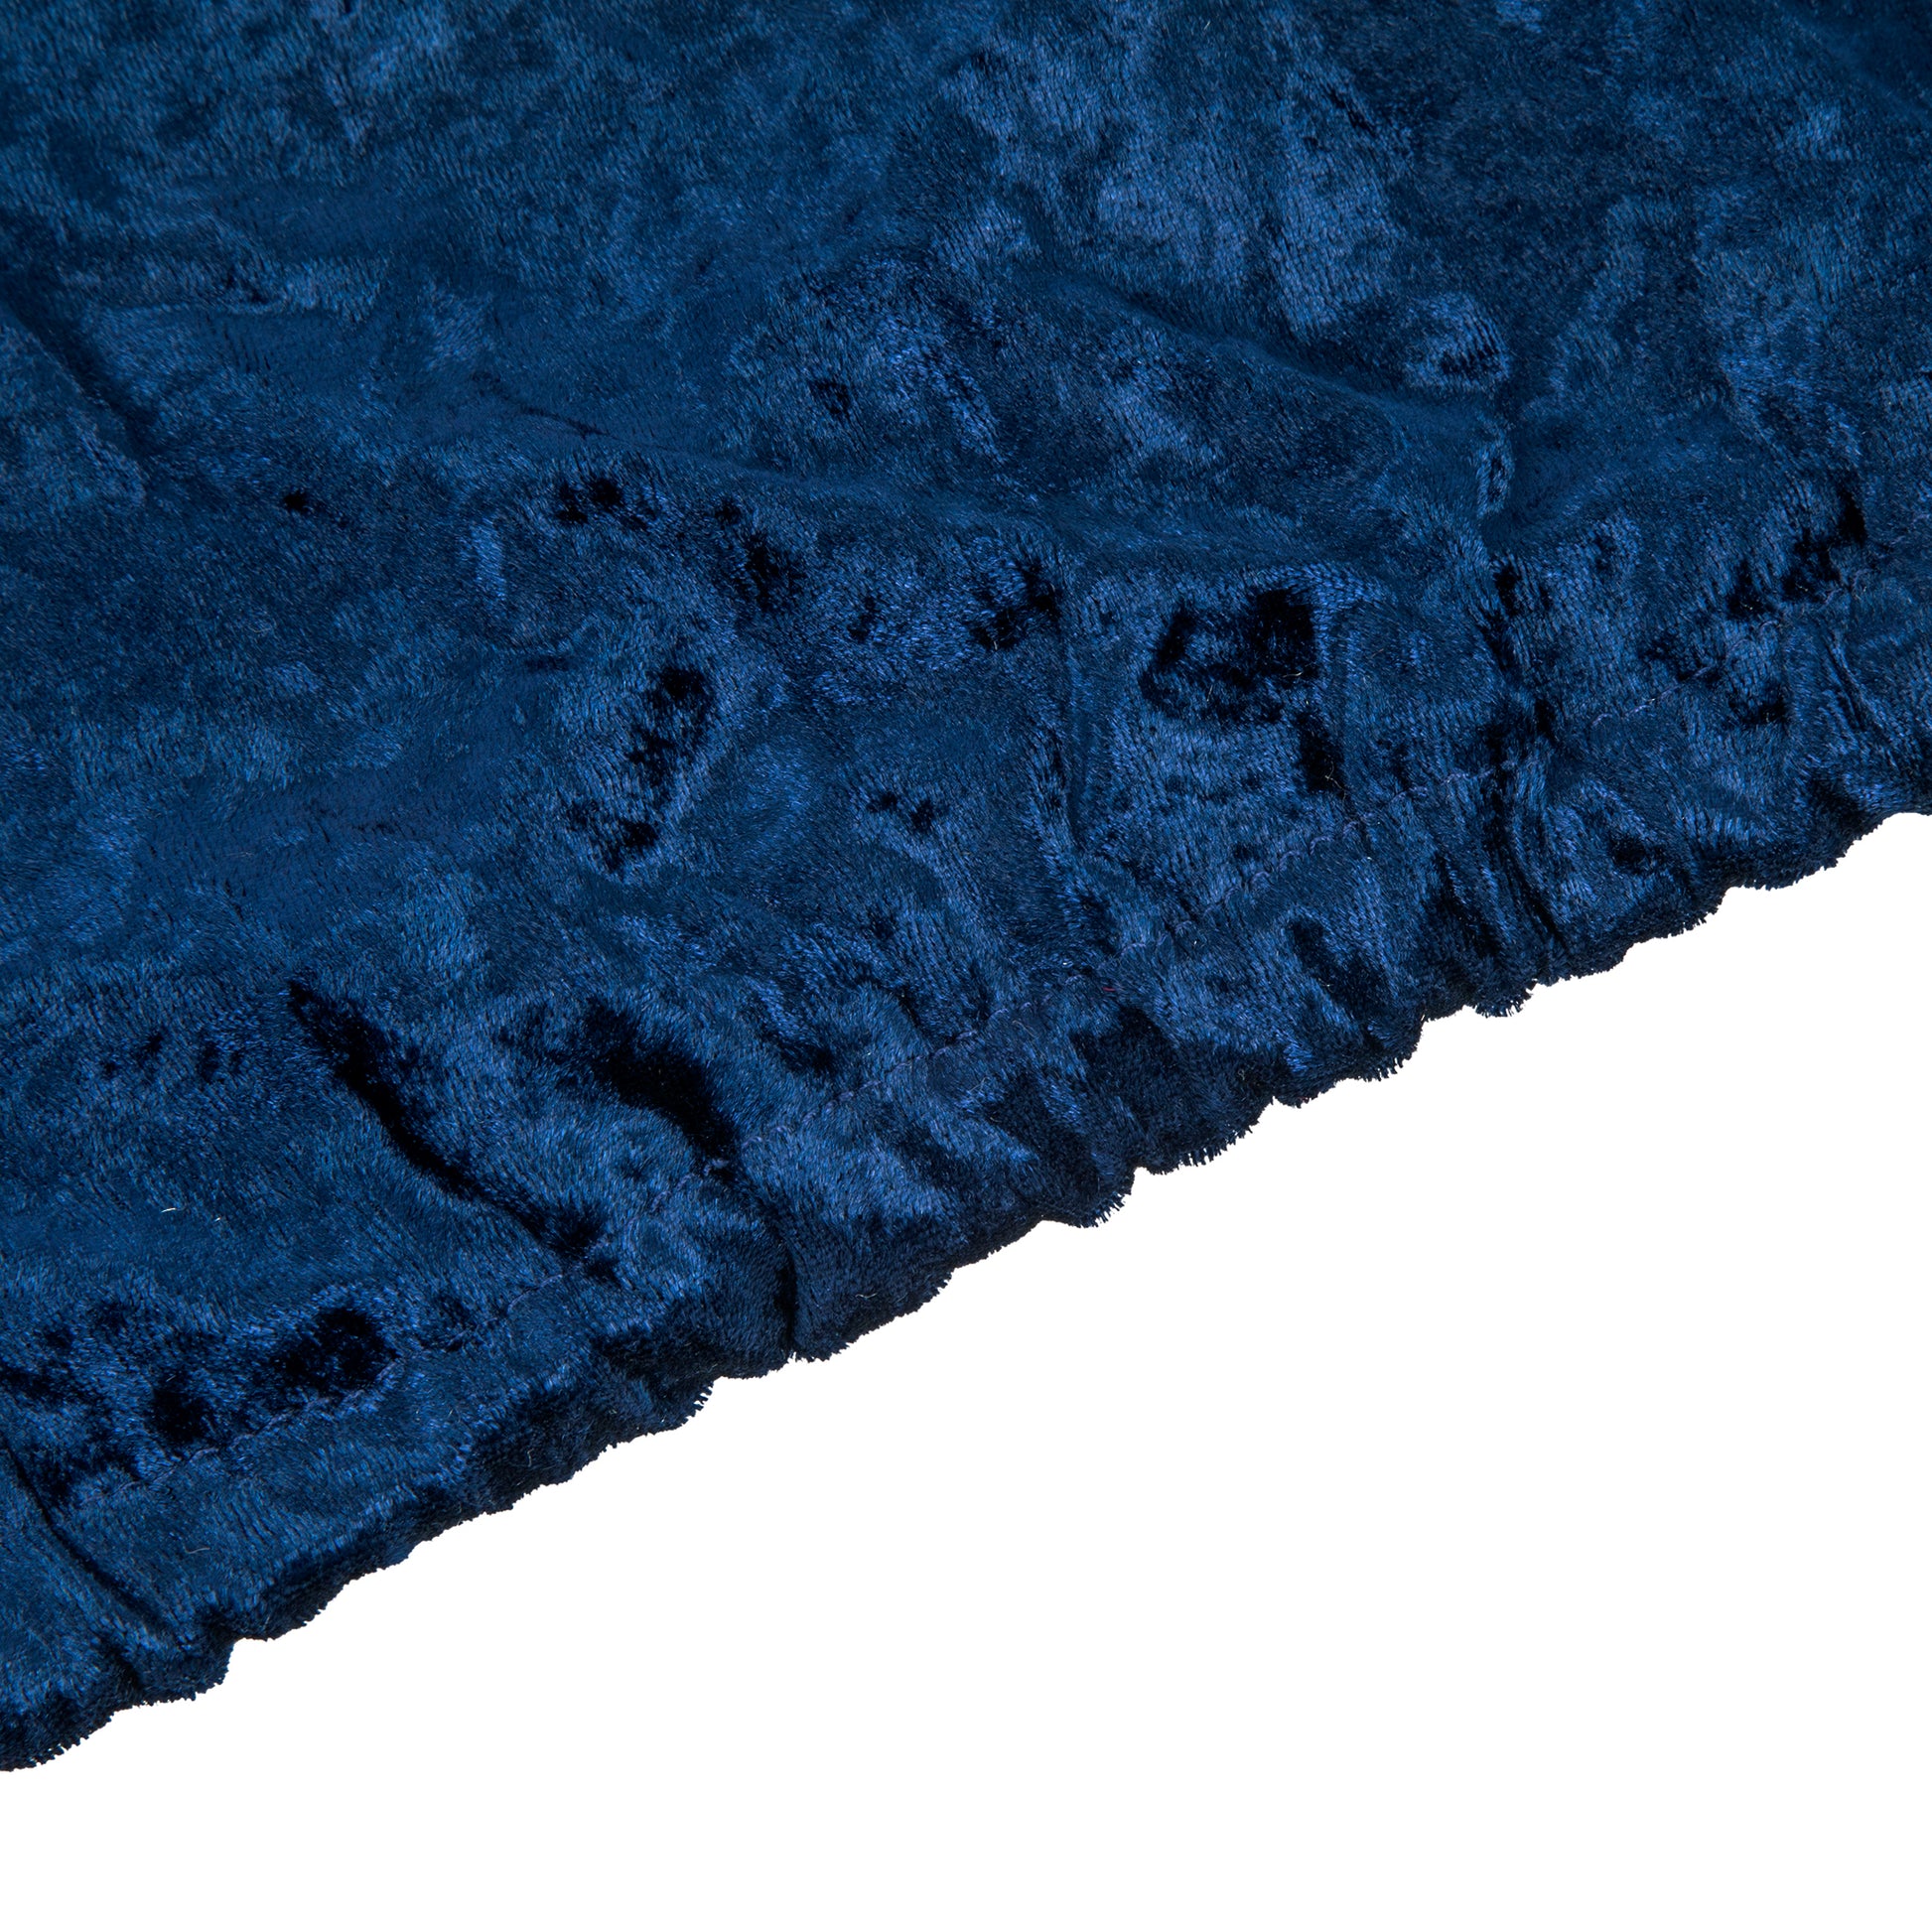 Velvet Covers for Metal Cylinder Pedestal Stands 5 pcs/set - Navy Blue